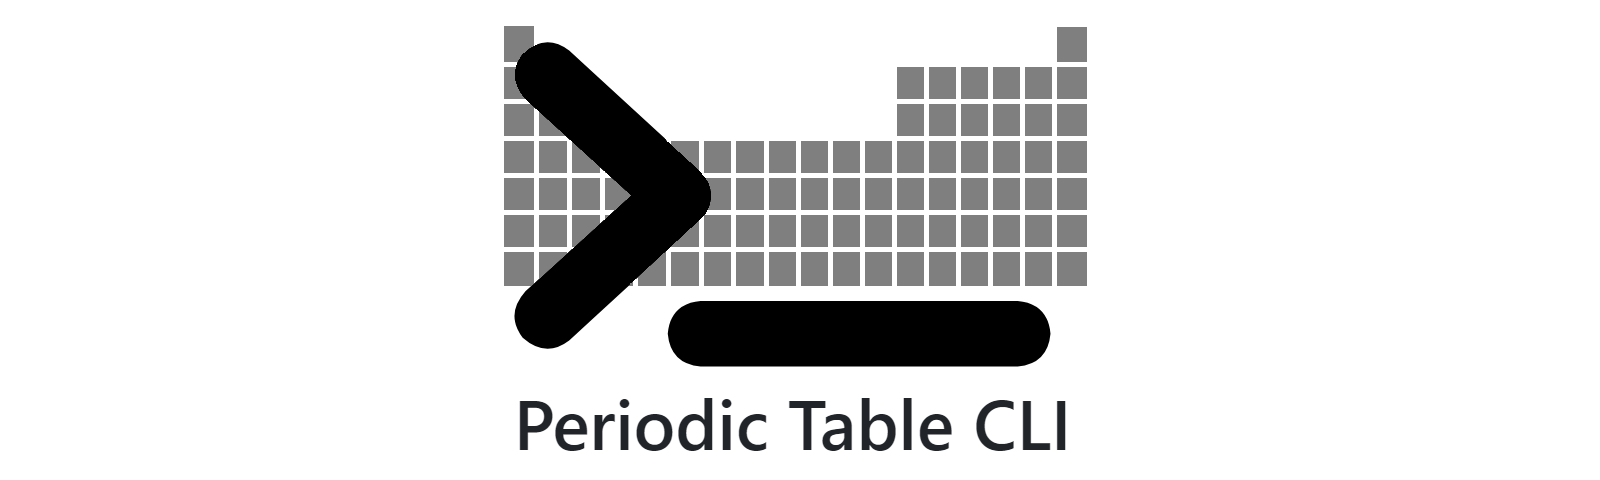 periodic-table-cli title